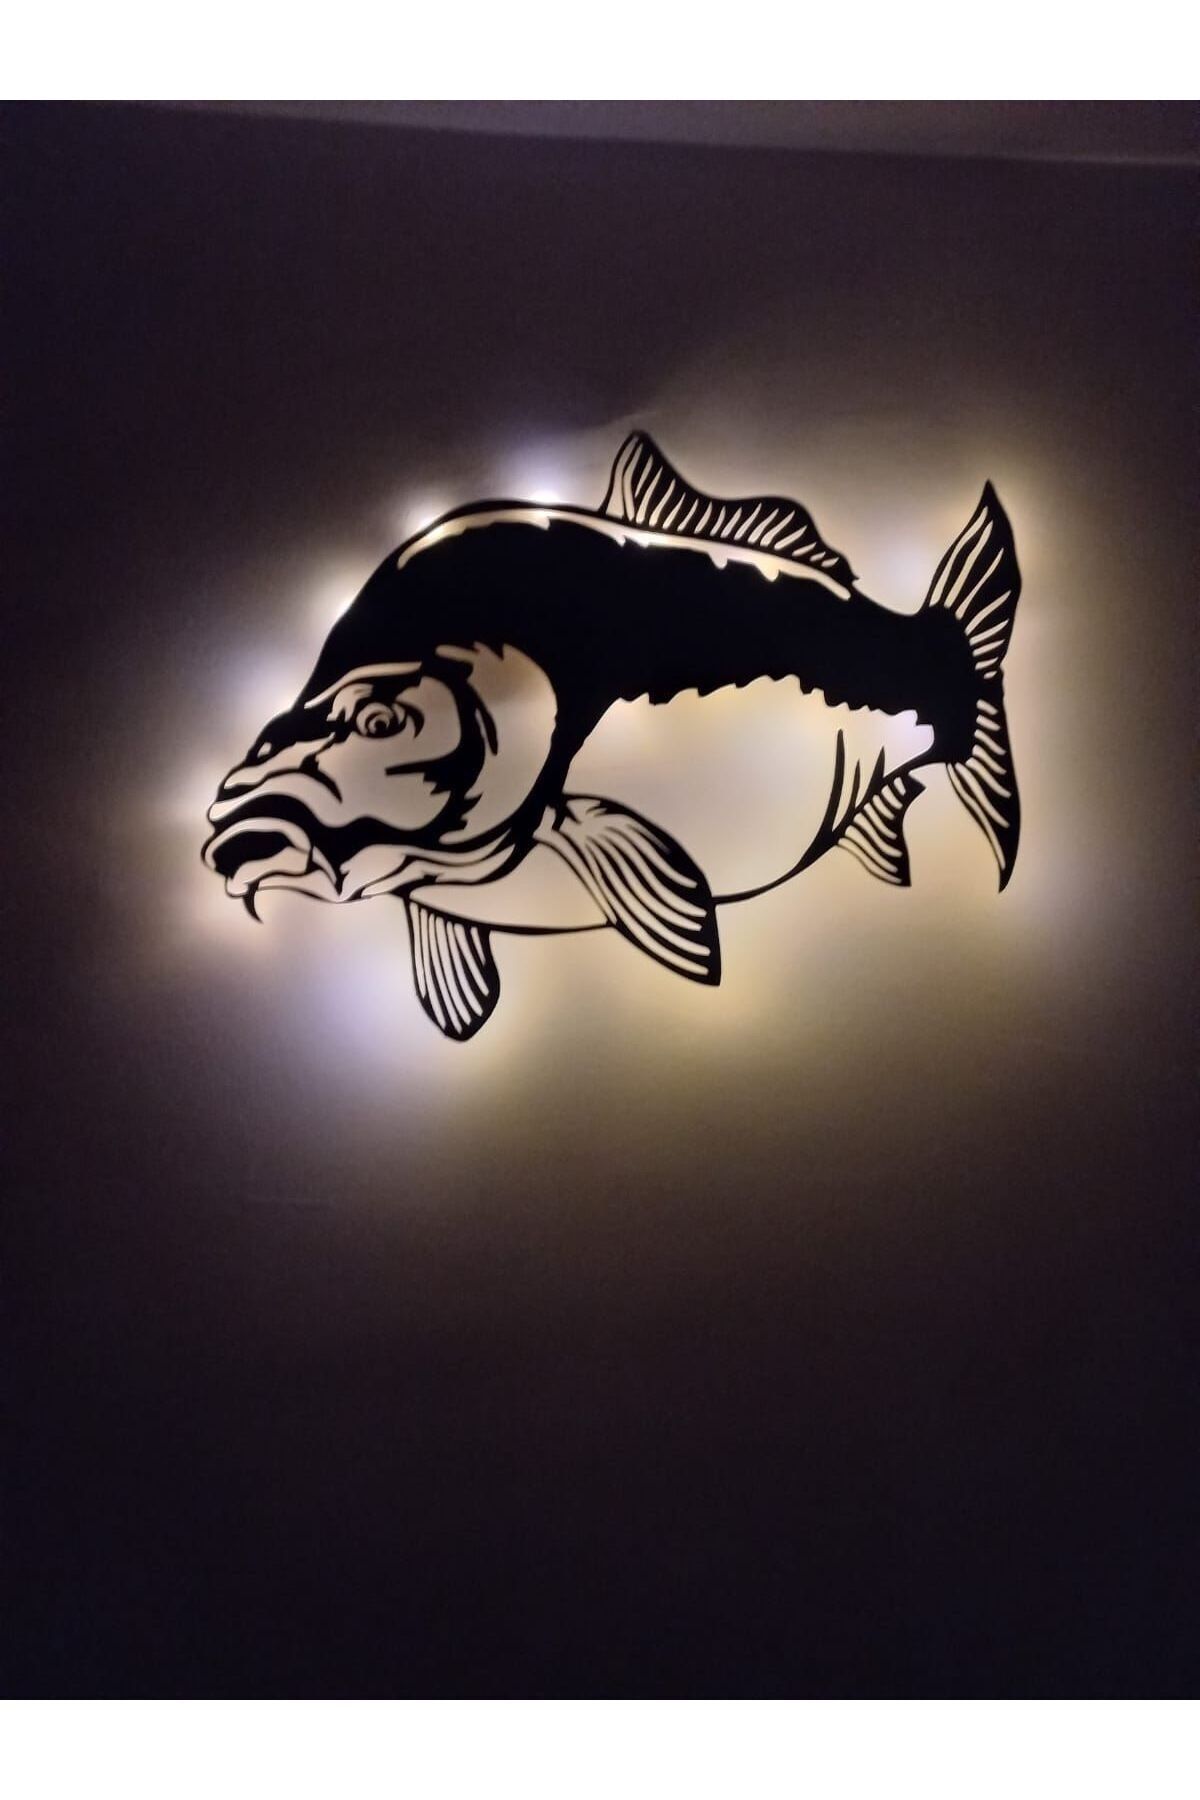 KLES Sazan Balığı Tablosu Işıklı Aynalı Sazan Akvaryum Balık